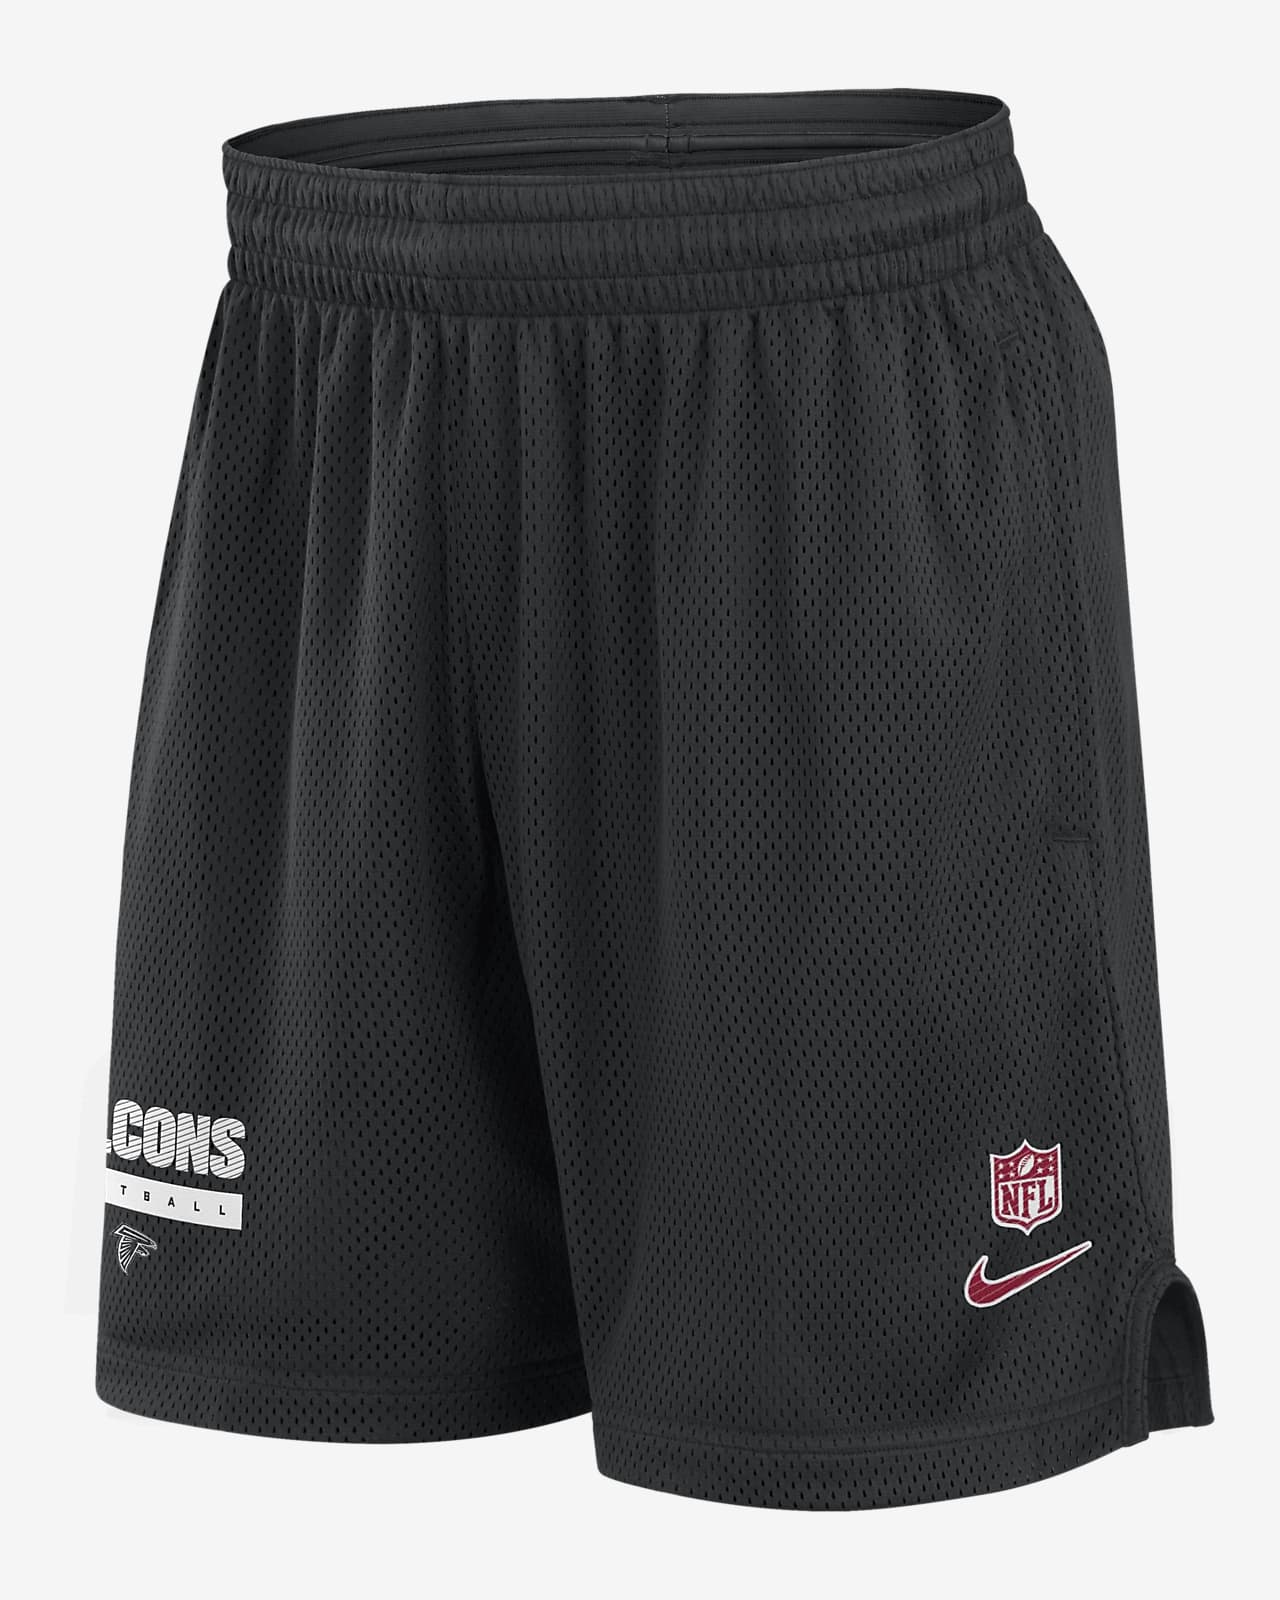 Atlanta Falcons Sideline Men's Nike Dri-FIT NFL Shorts